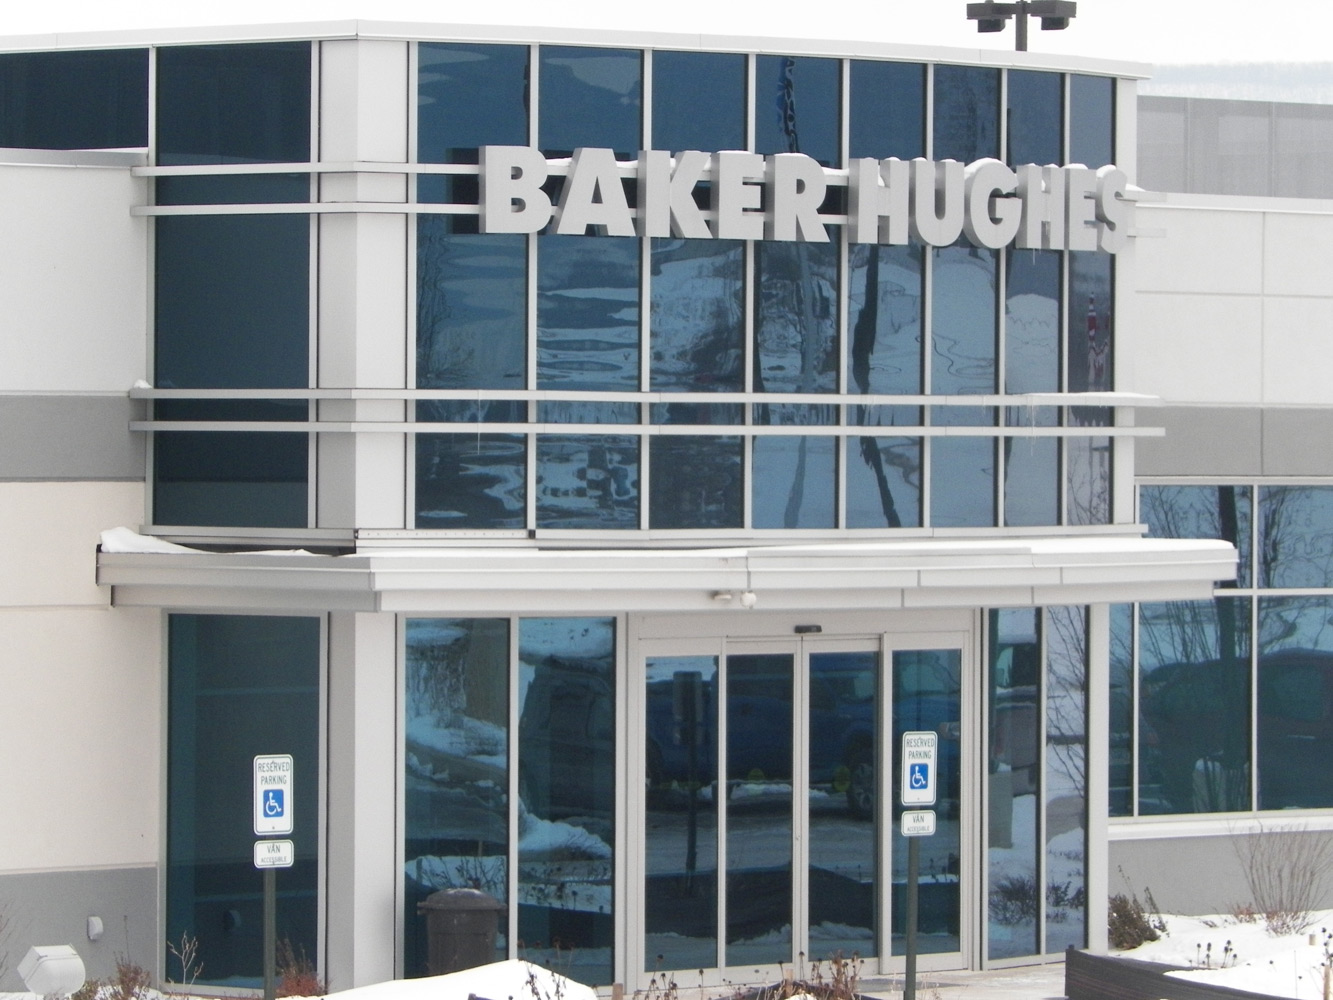 BAker Hughes Building